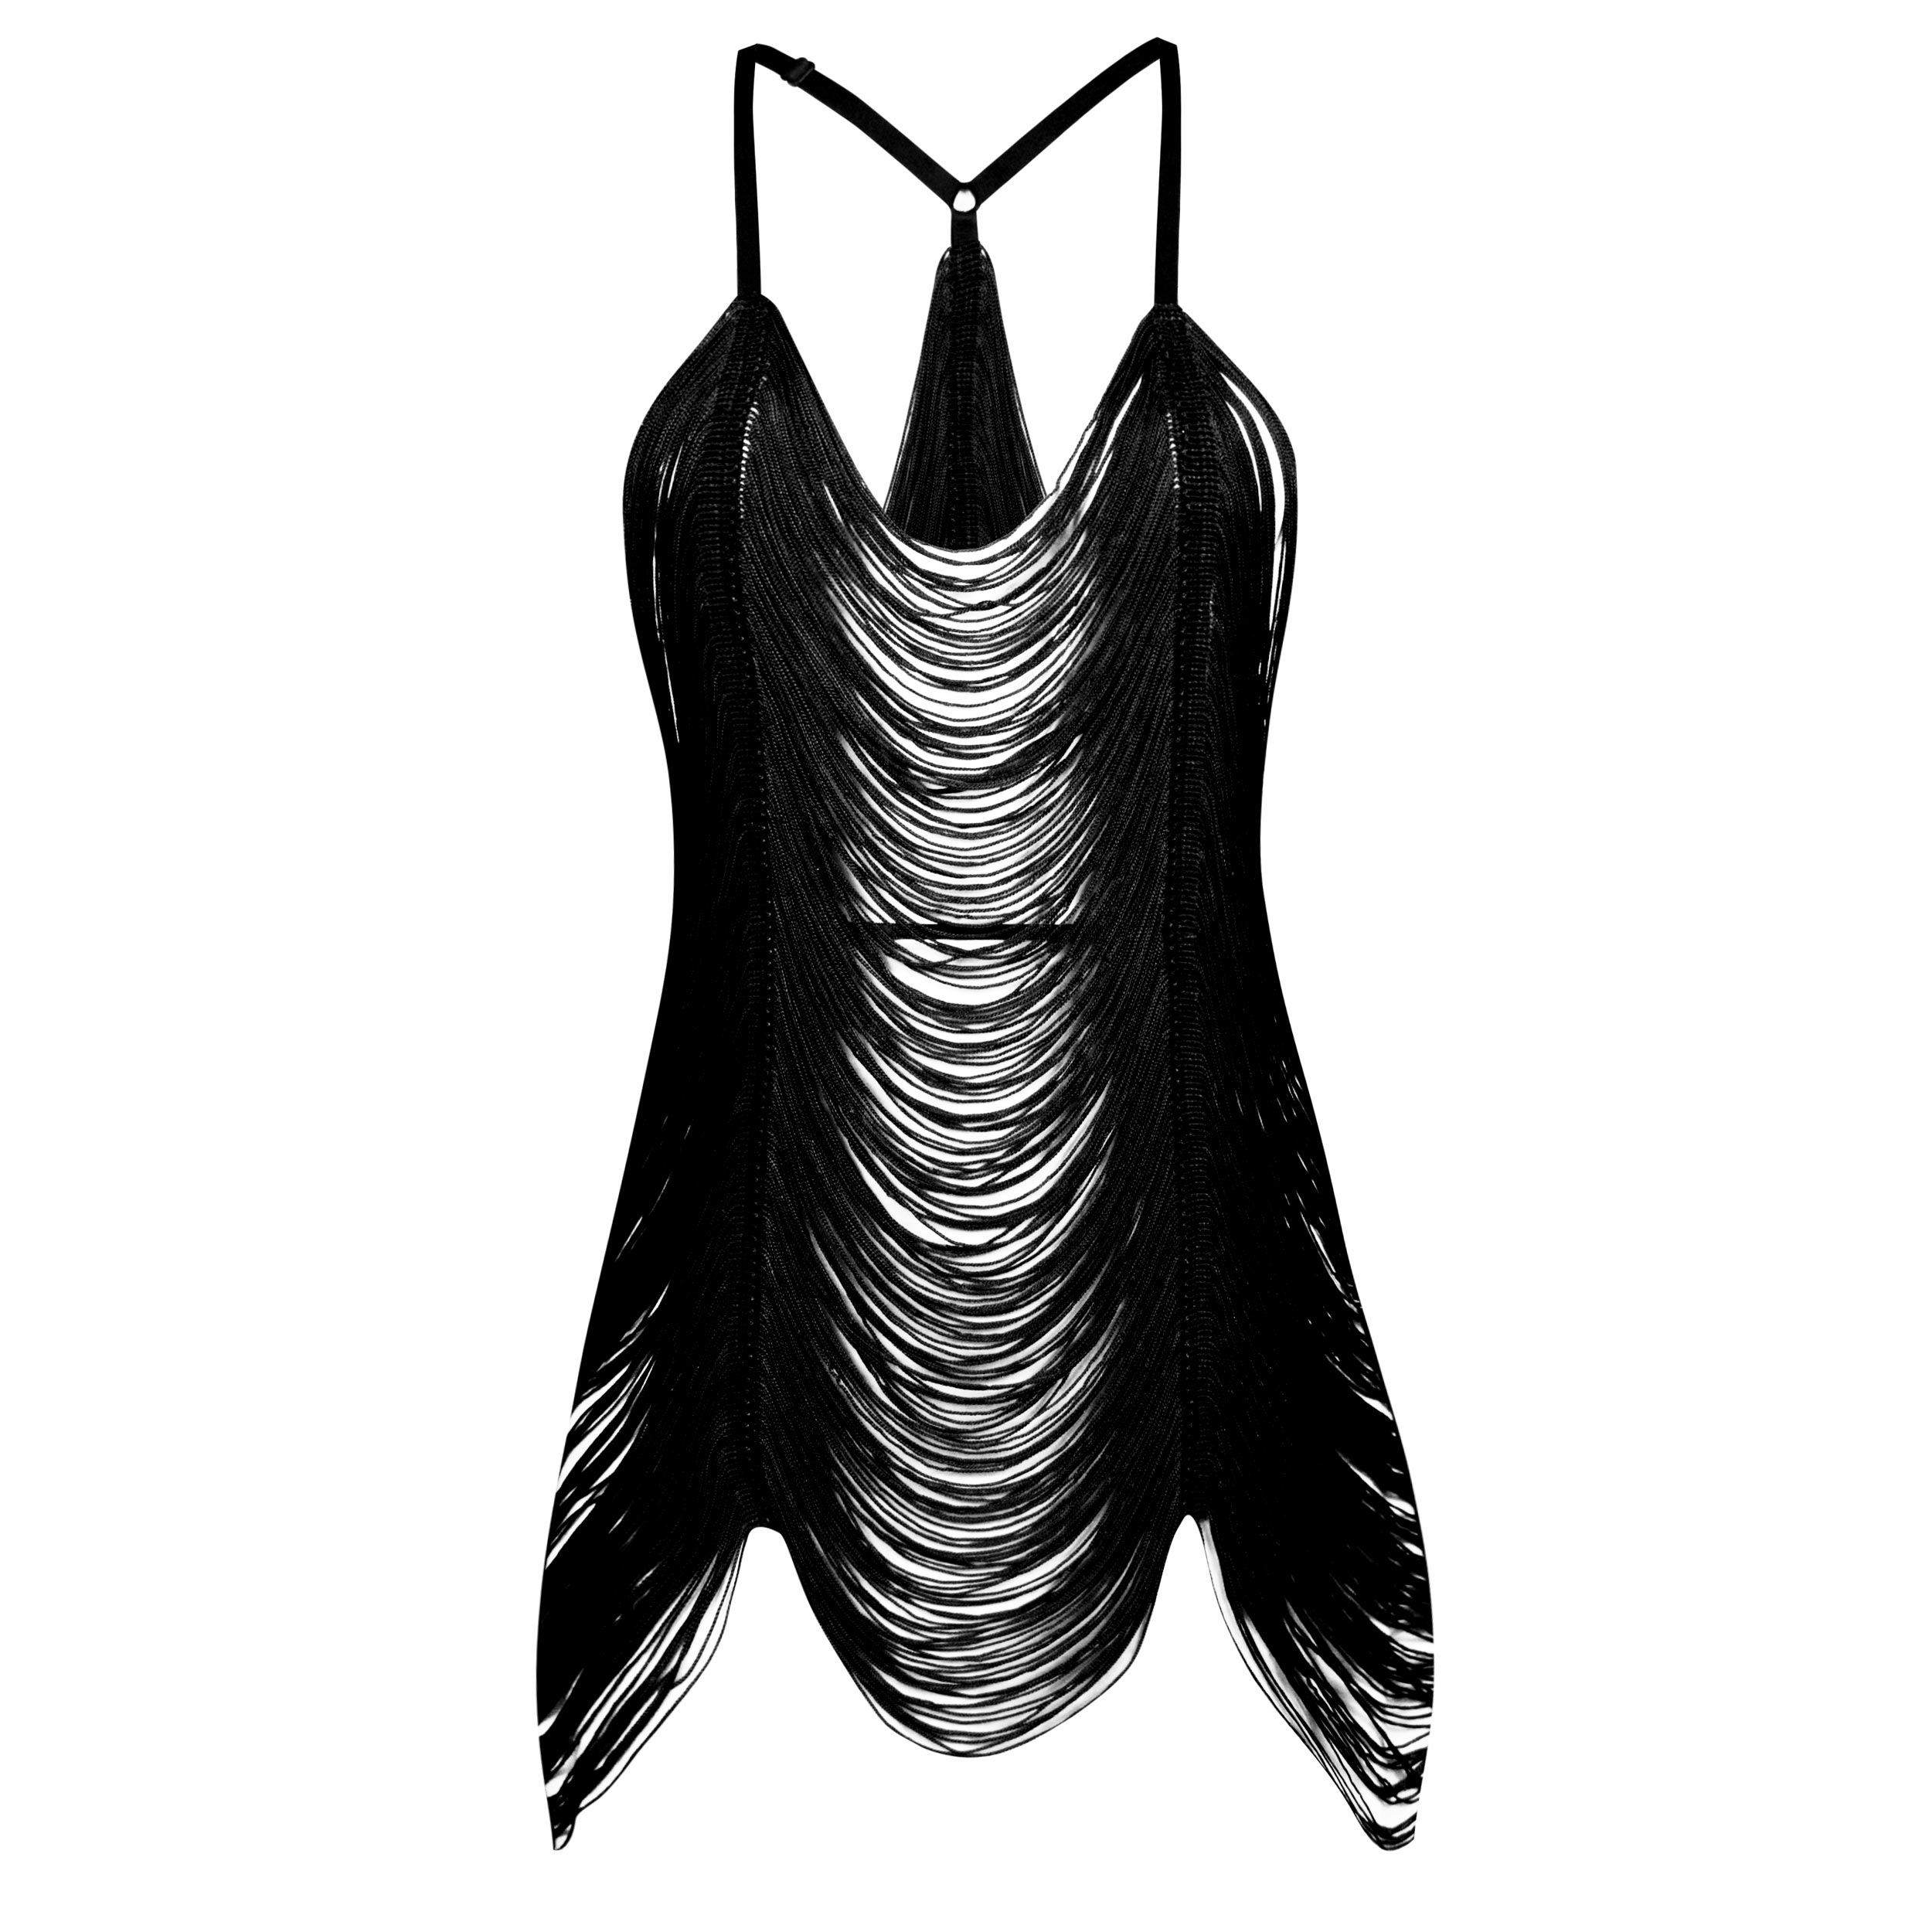 لباس خواب زنانه ماییلدا مدل ریش ریشی کد 4438-9726 رنگ مشکی